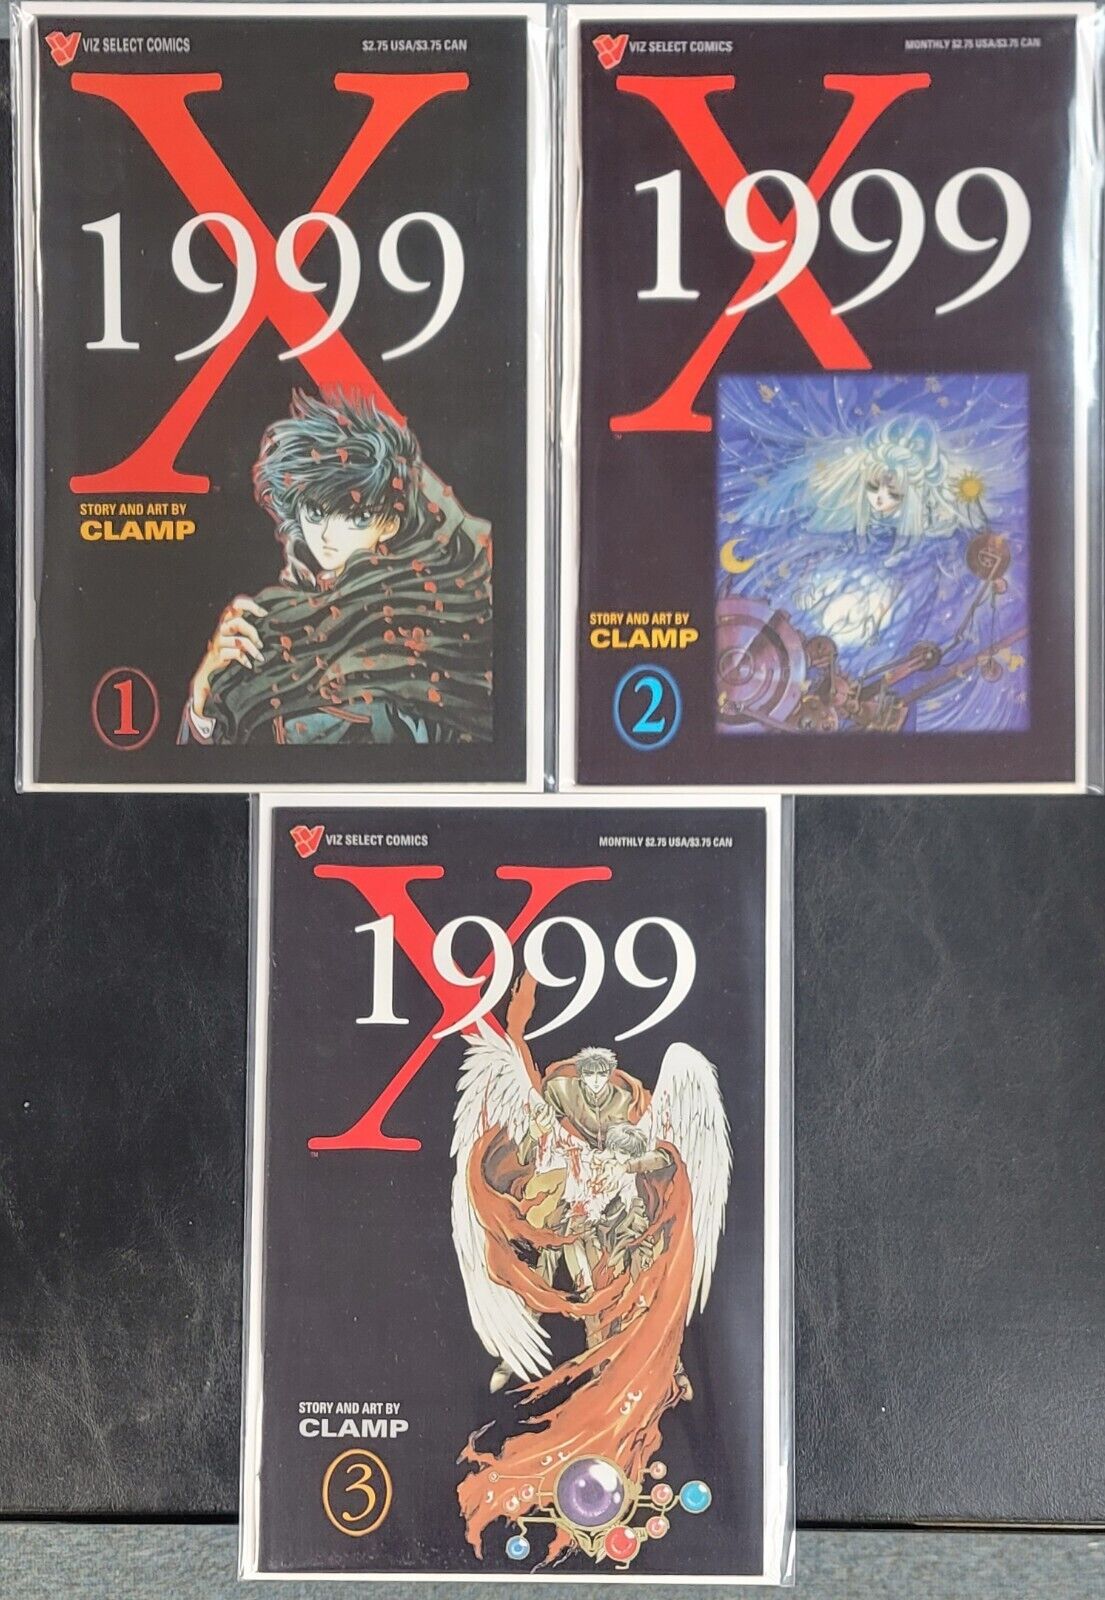 X 1999 #1-3 Viz Select Comics 1995 Full Lot Set VF-NM 8.0-9.0 or Better